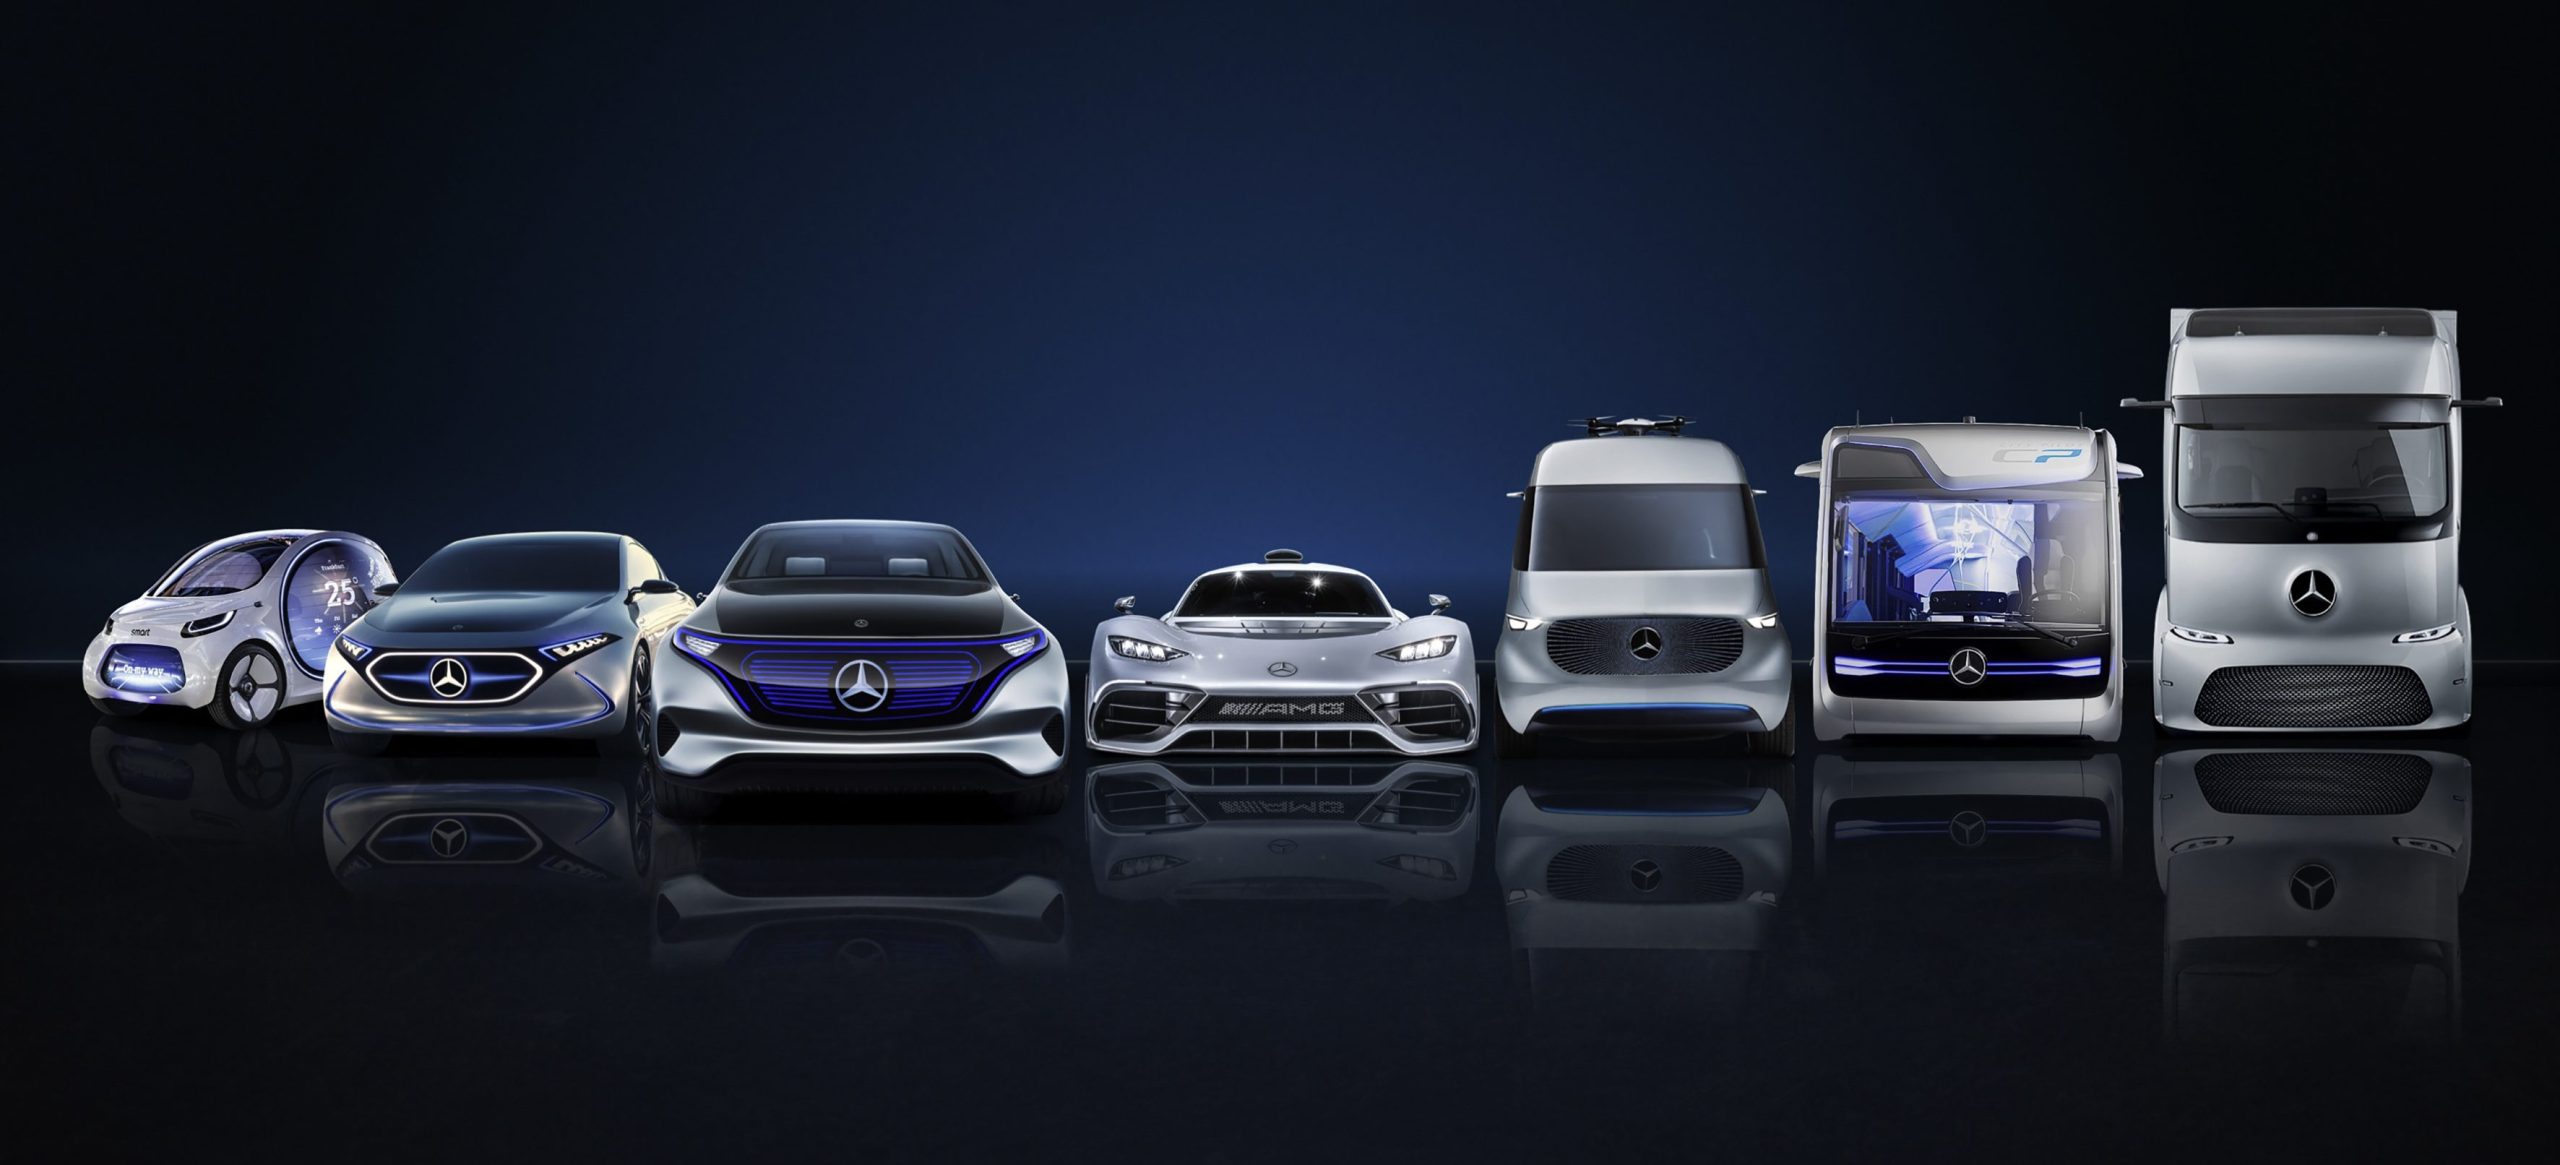 Daimler kondigt een investering van $ 85,000 miljard aan om de elektrificatie van zijn voertuigen te versnellen.